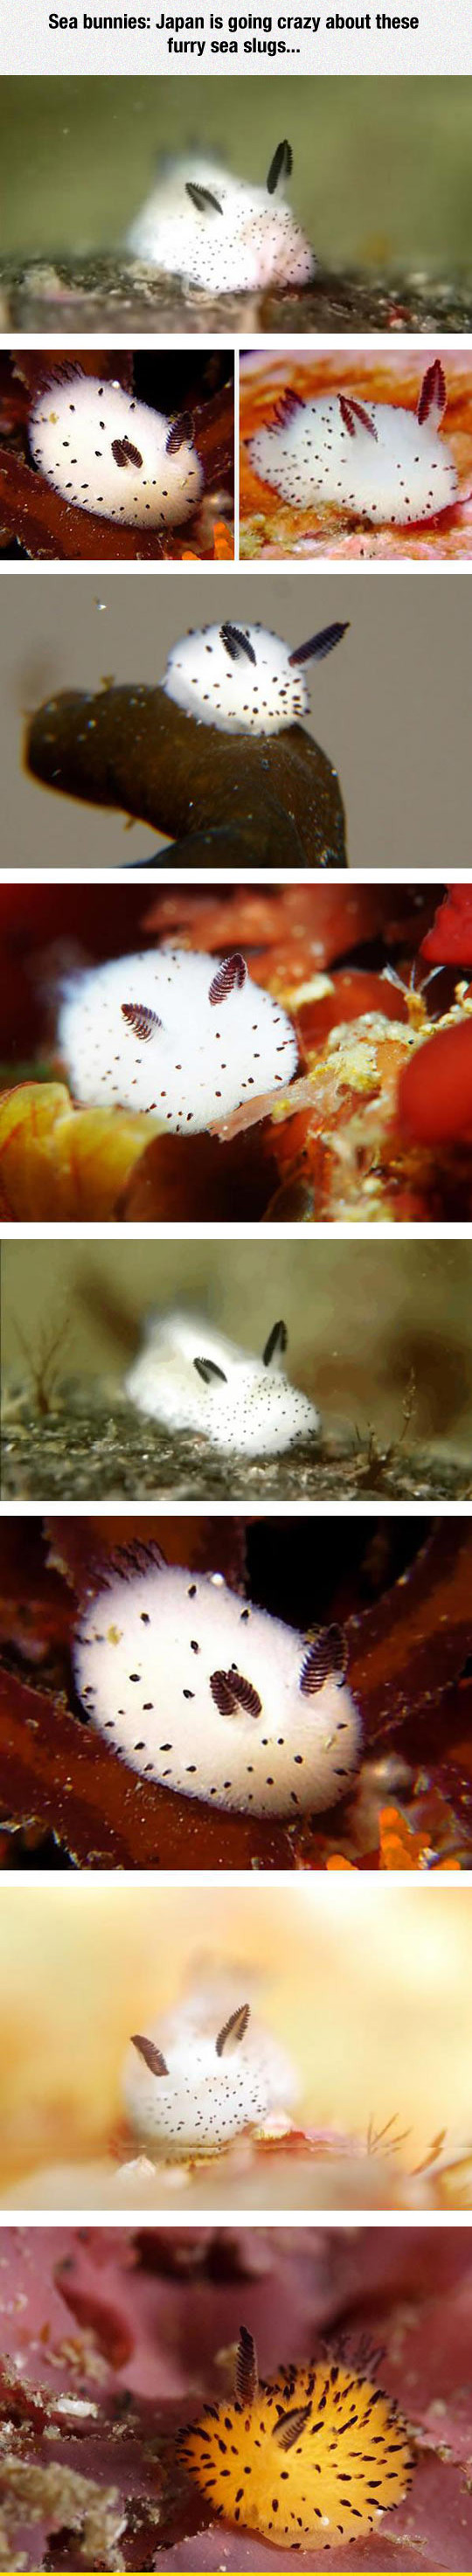 funny-sea-bunnies-japan-slugs